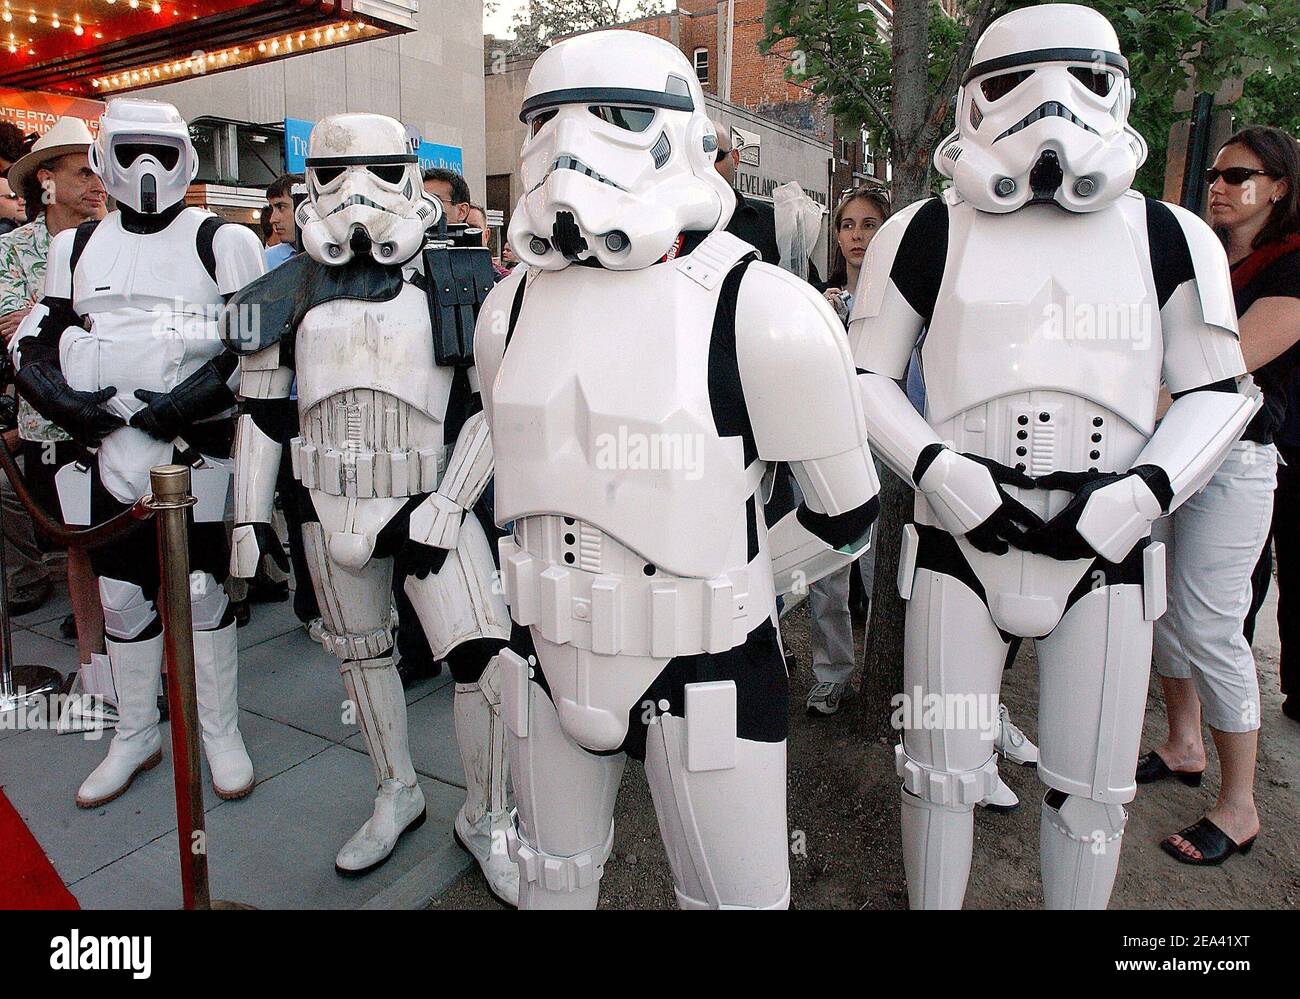 Figuren aus Star Wars-Filmen außerhalb des Uptown Theatre bei der Premiere von 'Star Wars Episode III, die Rache der Sith' in Washington DC, USA, am 12. Mai 2005. Foto von Olivier Douliery/ABACA. Stockfoto